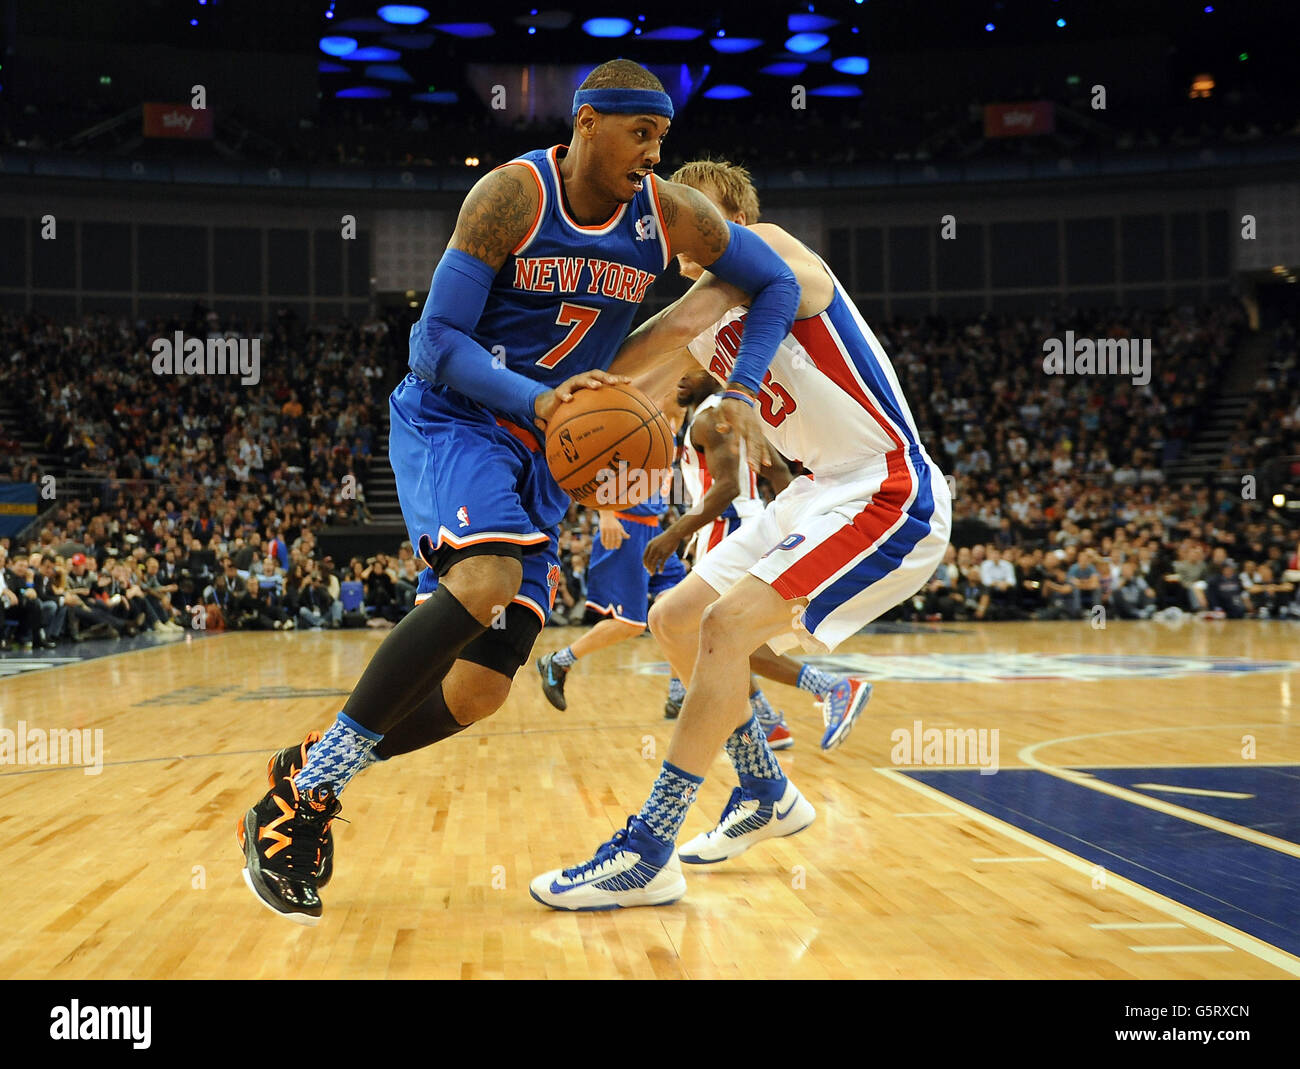 Carmelo Anthony von New York Knicks (links) kommt Kyle Singler von Detroit Pistons während des NBA London Live-Spiels 2013 in der O2 Arena, London, weg. Stockfoto